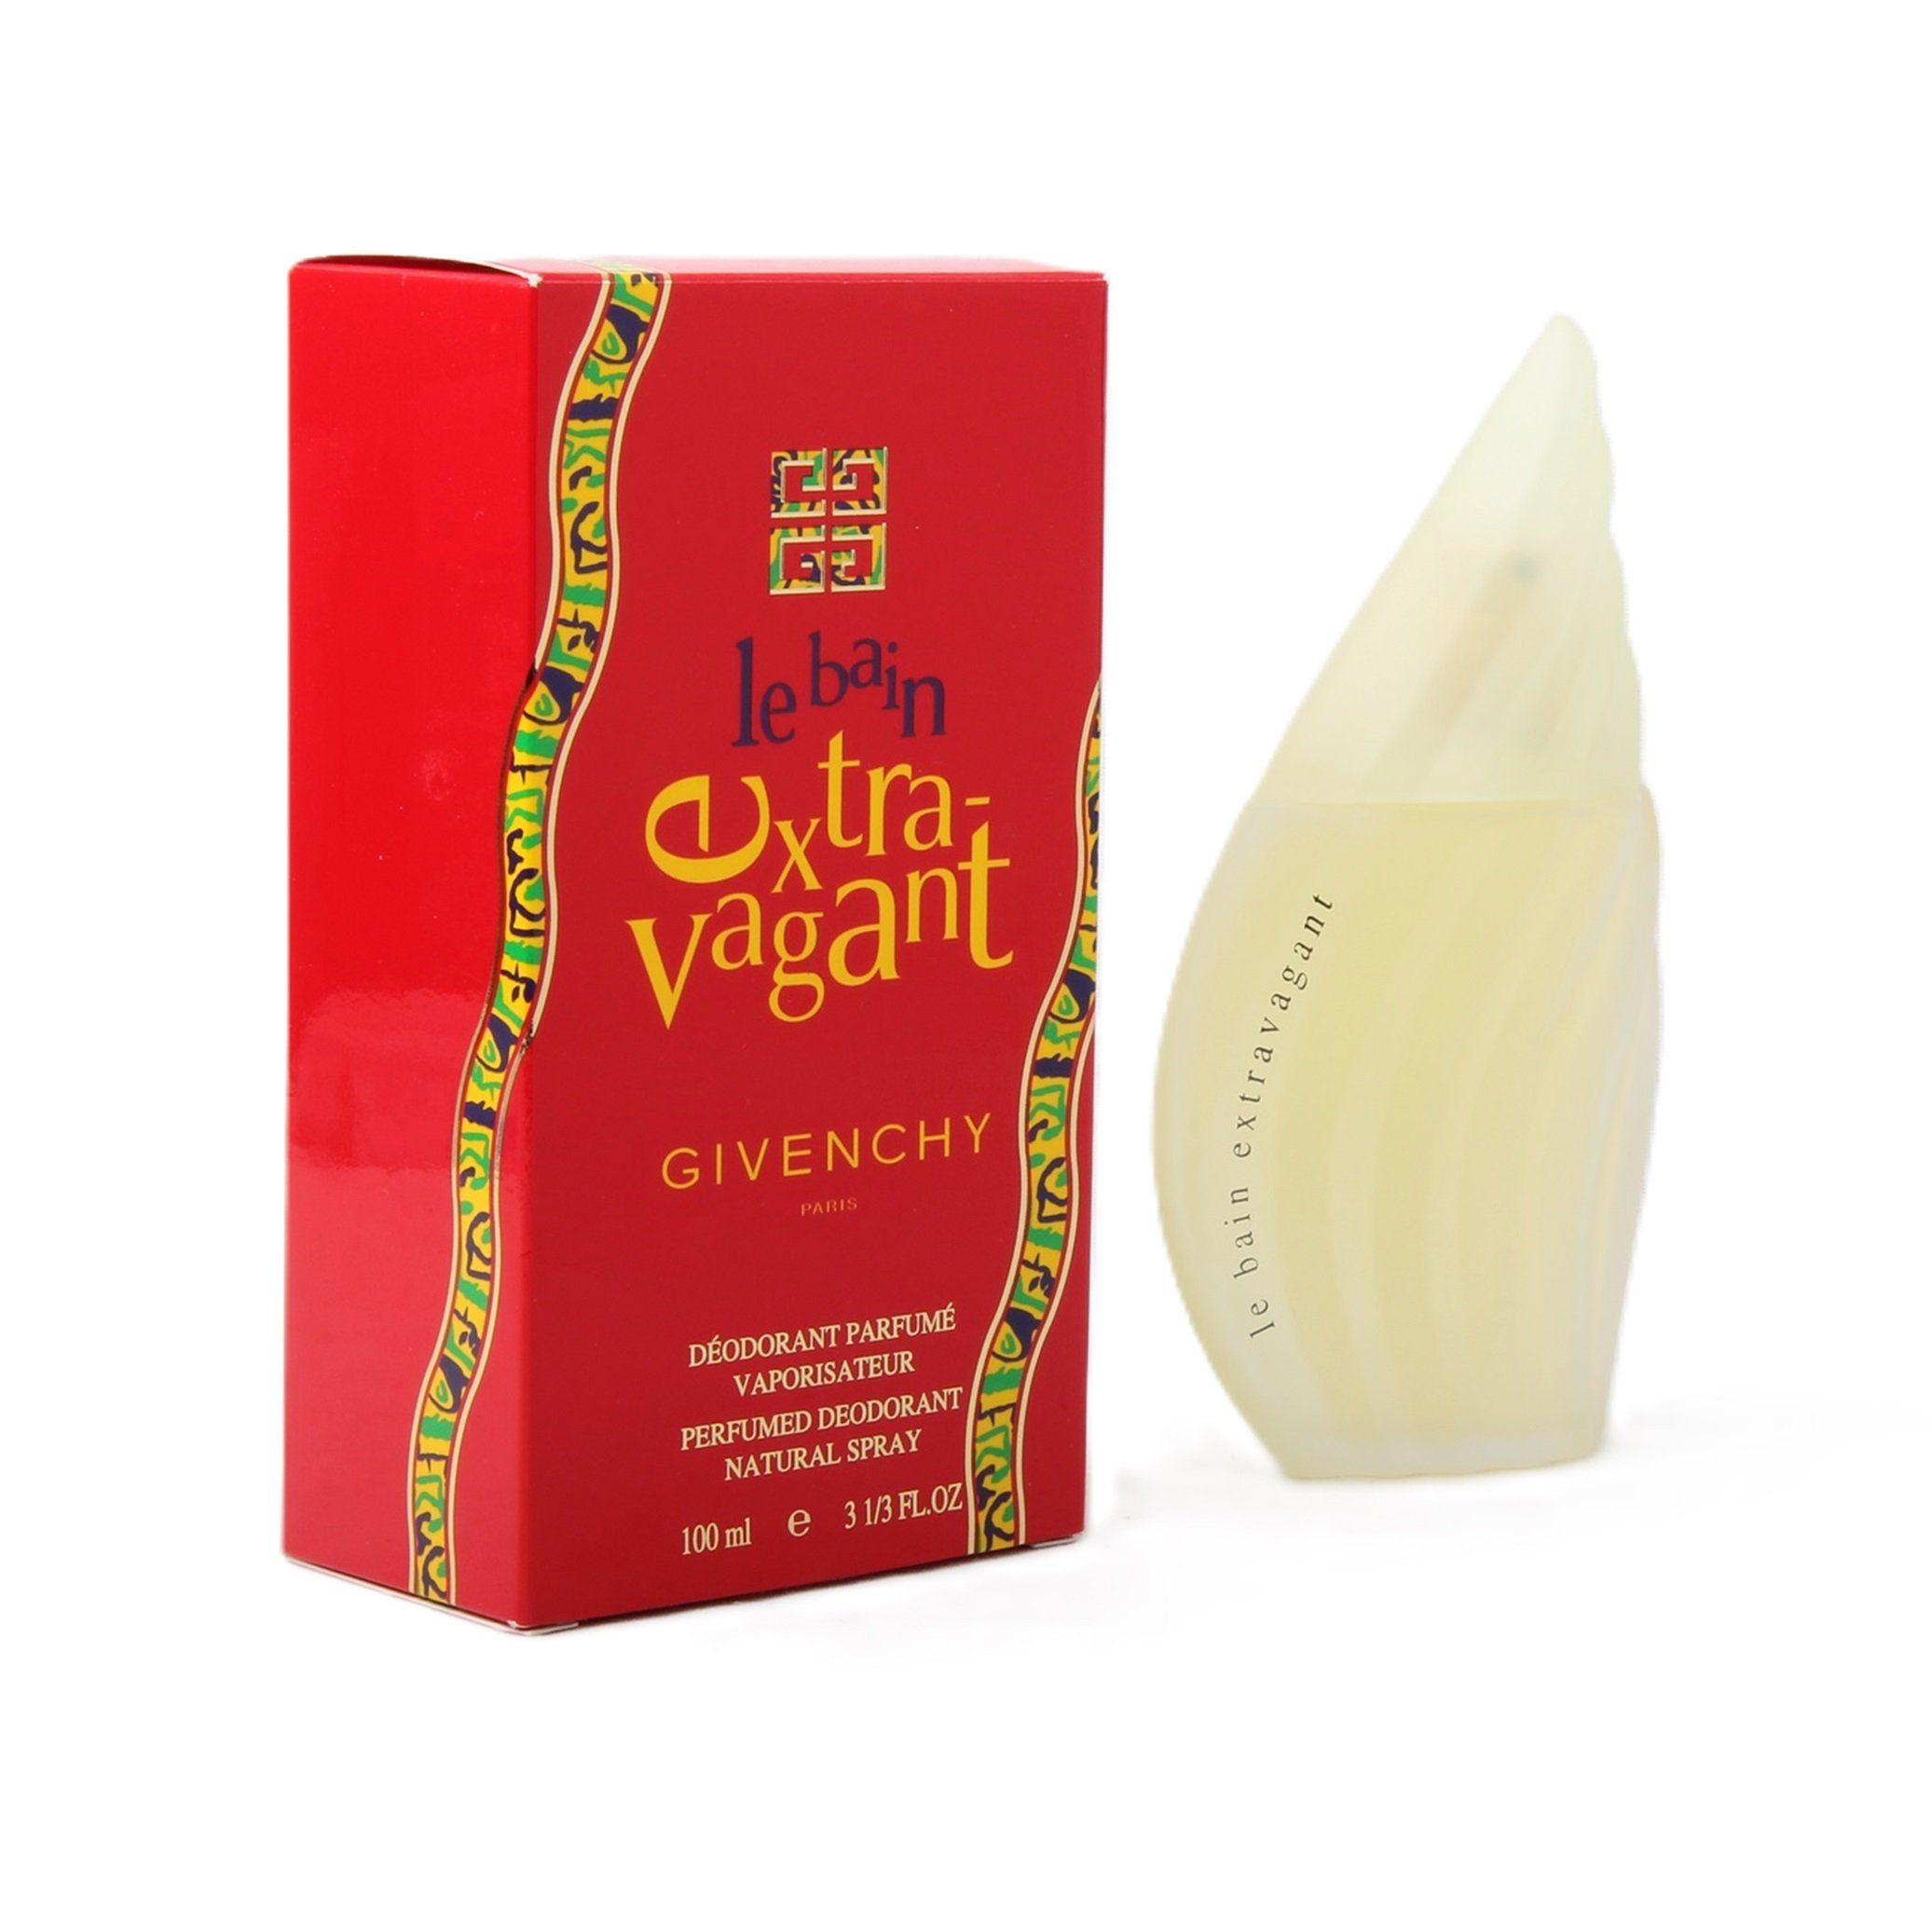 GIVENCHY Körperspray Givenchy Le Bain Extravagant Perfumed Deodorant Spray 100ml